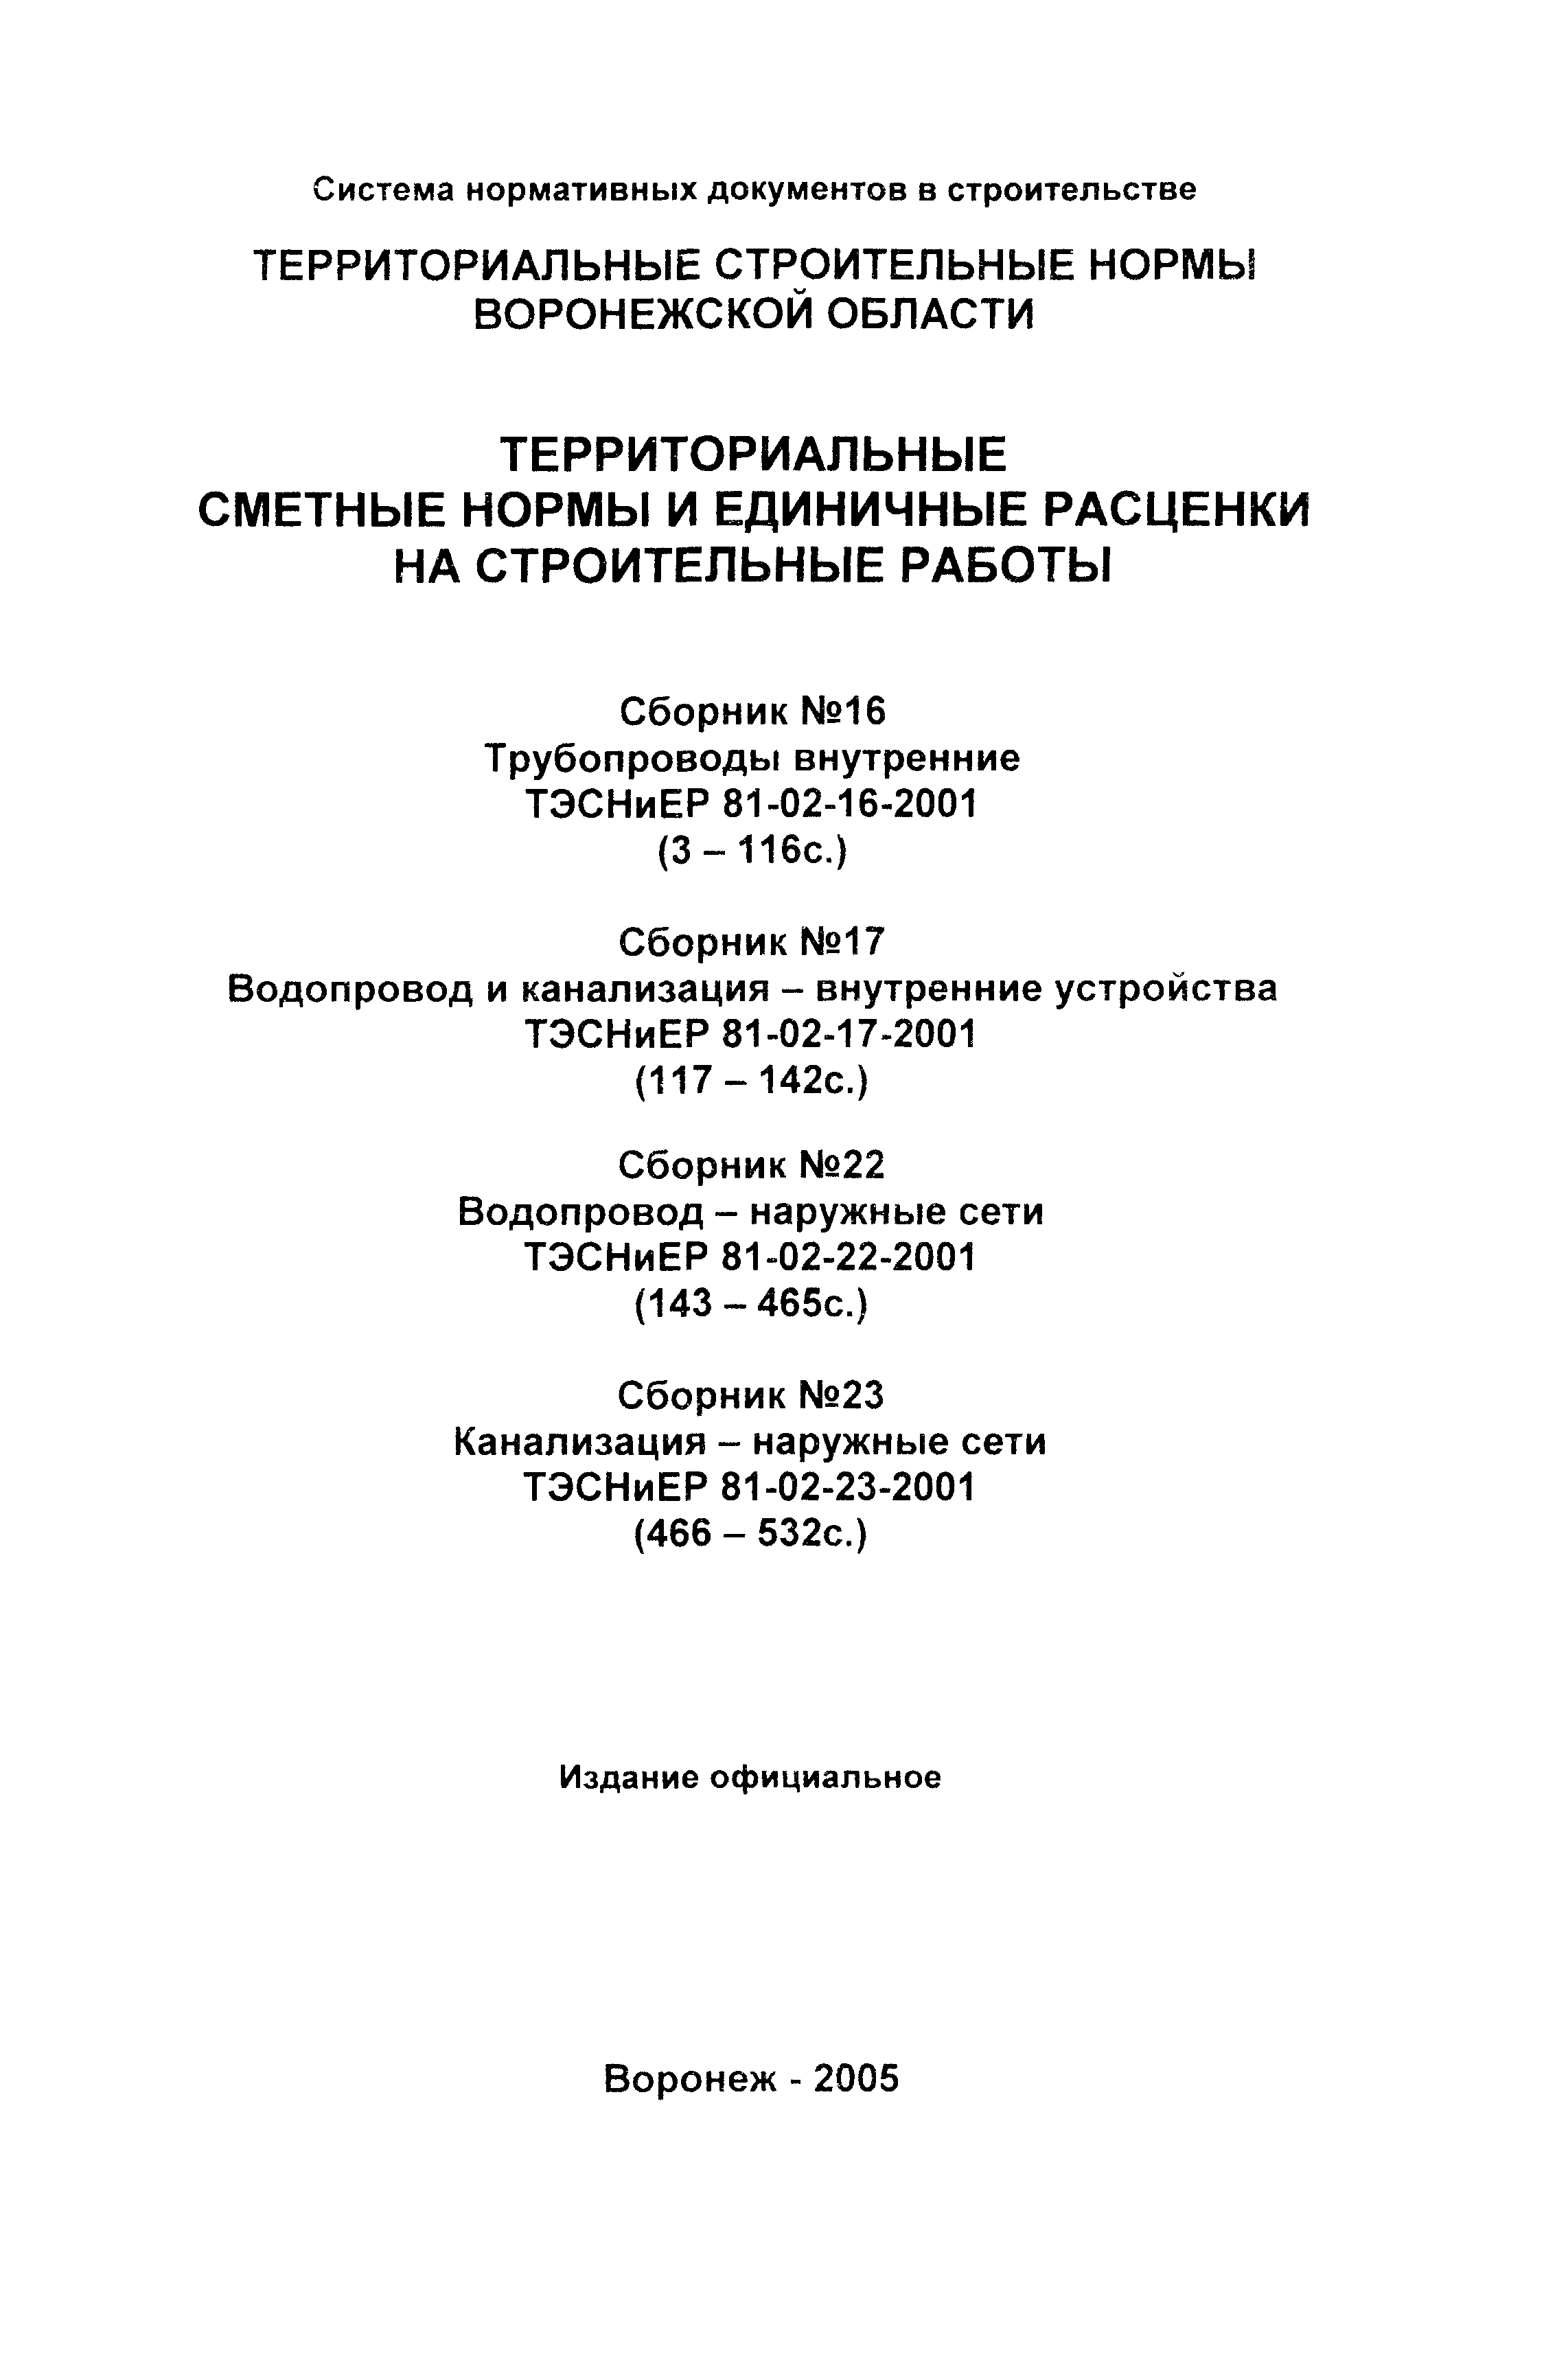 ТЭСНиЕР Воронежская область 81-02-23-2001